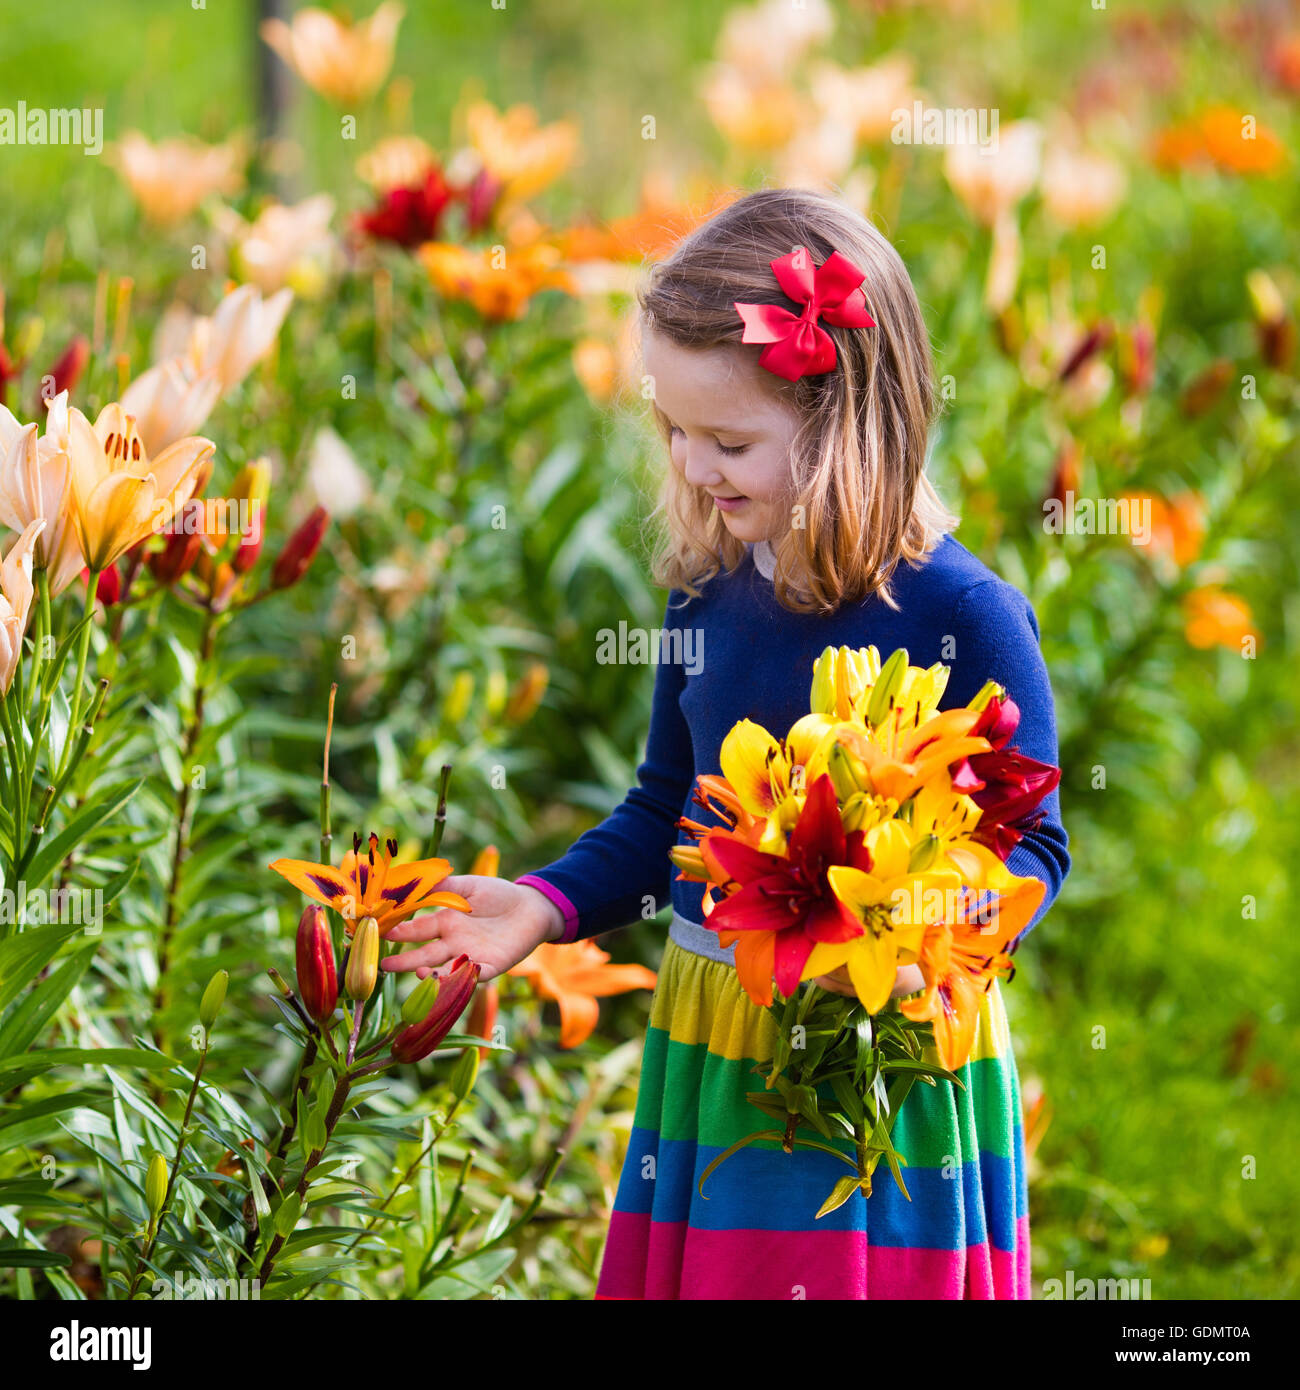 Niedliche kleine Mädchen Lilie Blumen pflücken im blühenden Sommergarten zur Verfügung. Kind hält Lilien Strauß in schönen Blumenwiese. Stockfoto